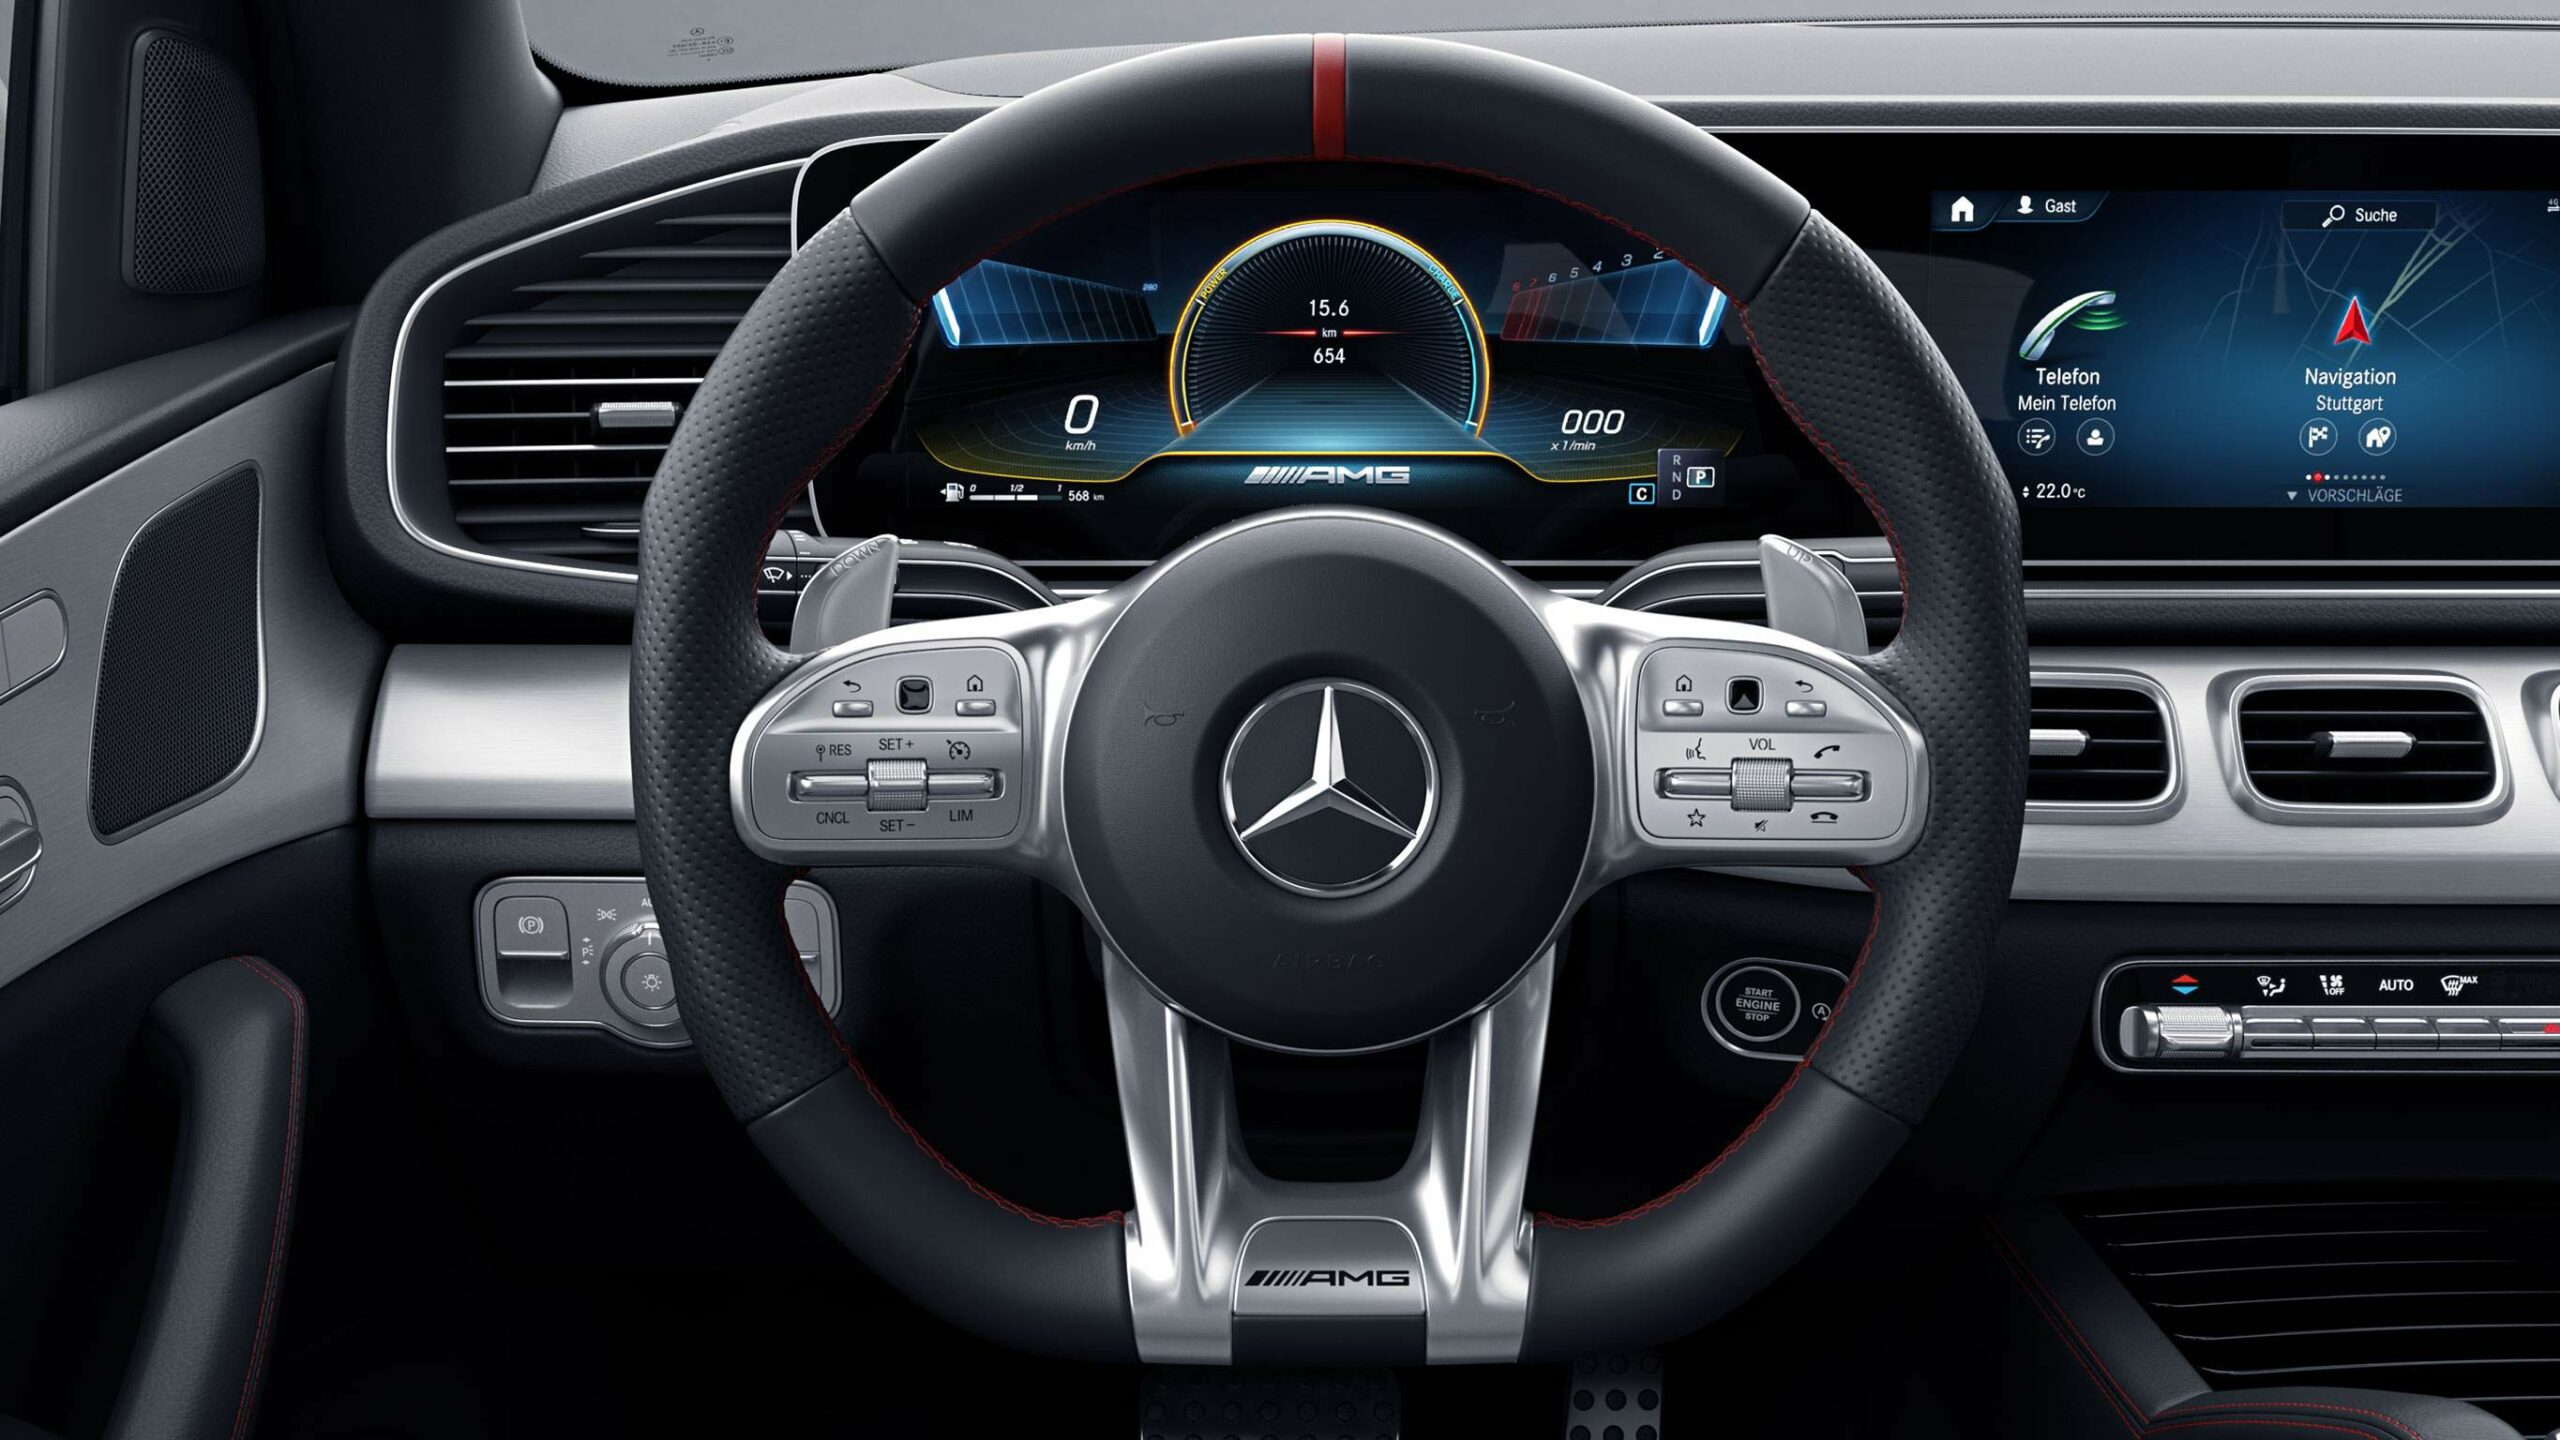 Habitaculo de la GLE Coupe AMG de Mercedes-Benz, completamente digital